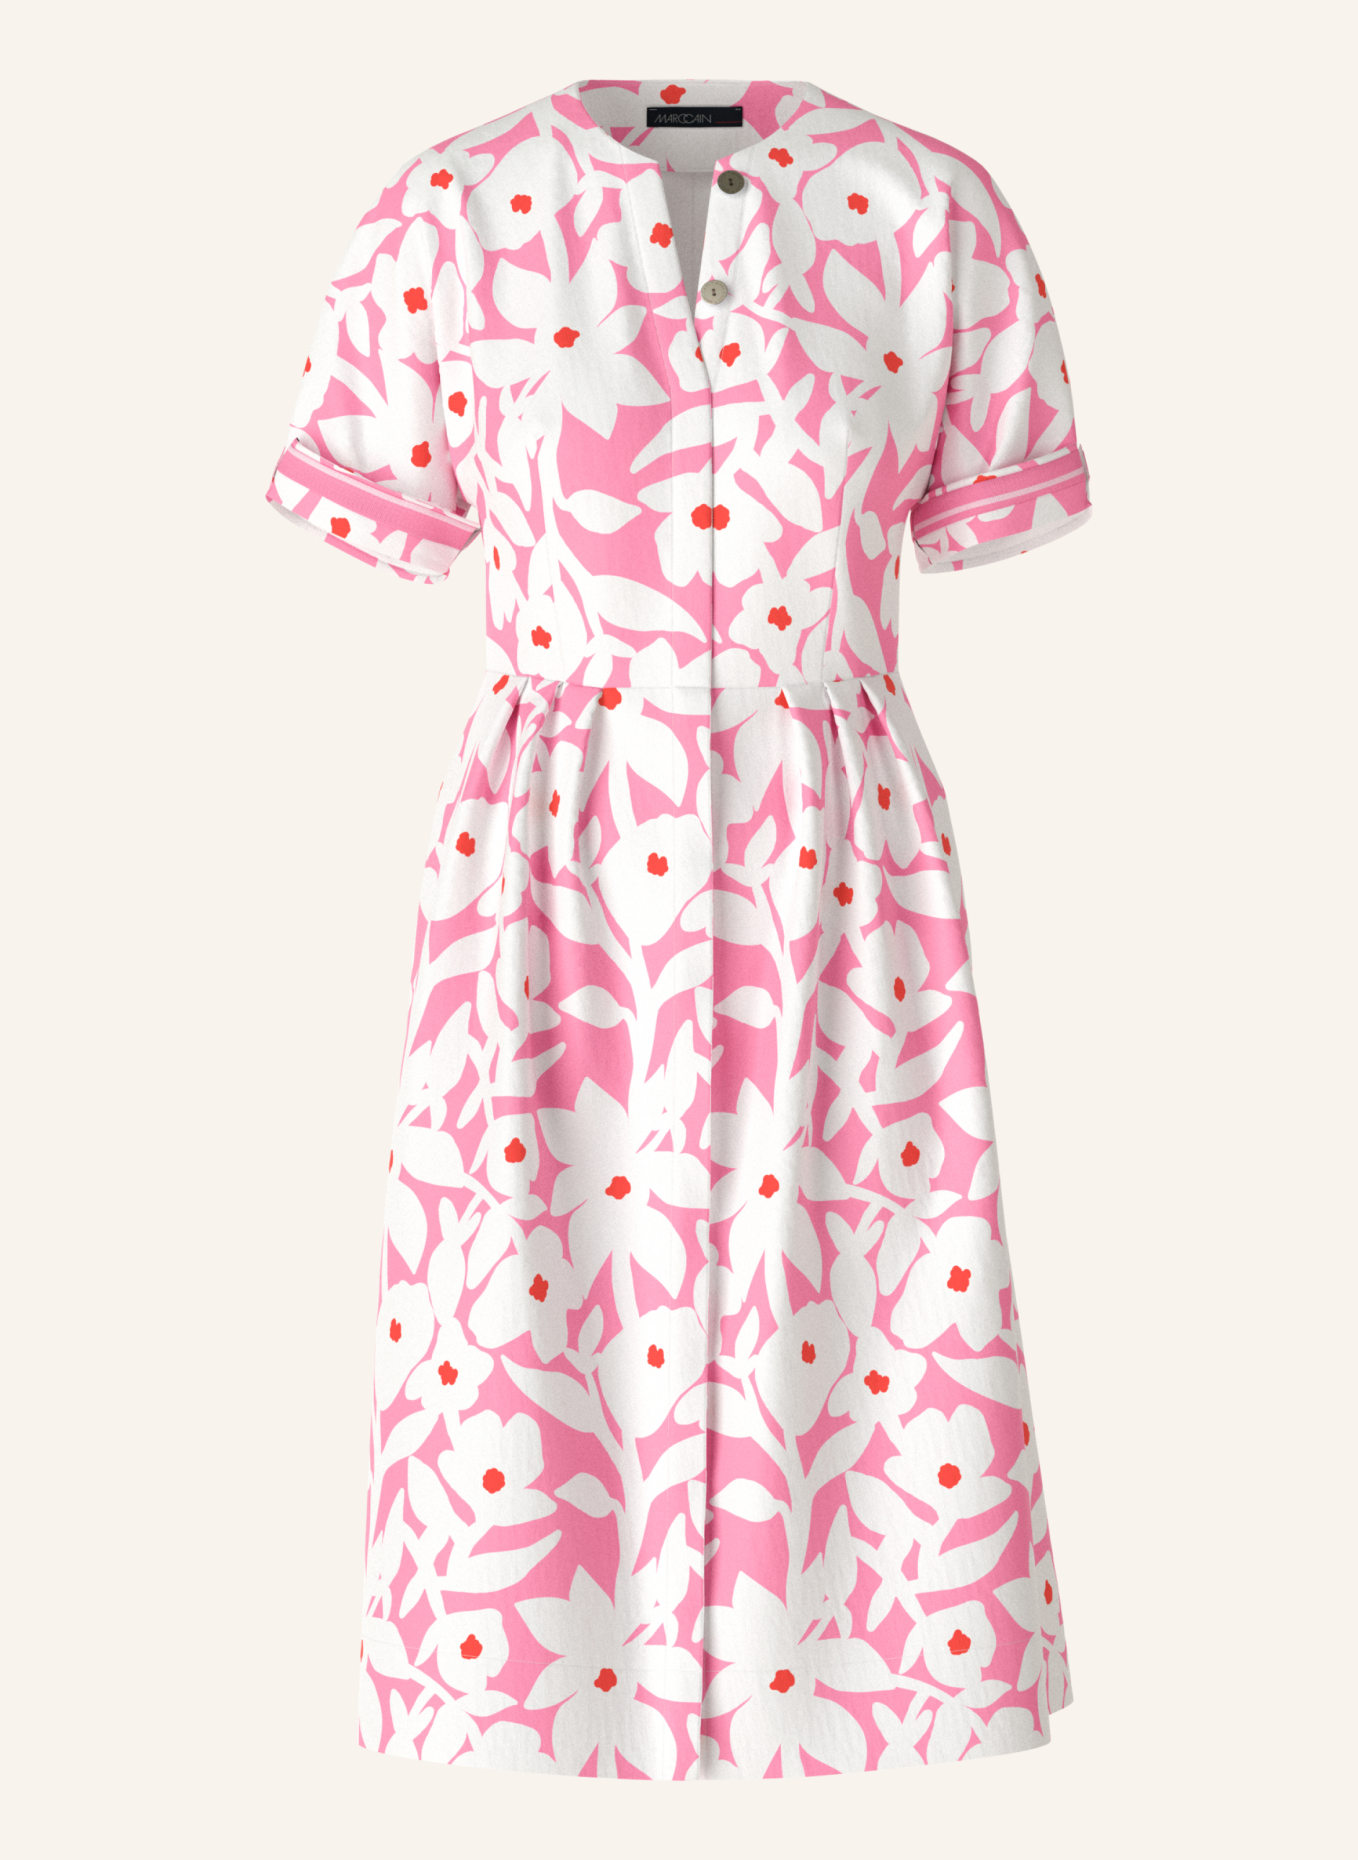 MARC CAIN Kleid, Farbe: WEISS (Bild 1)